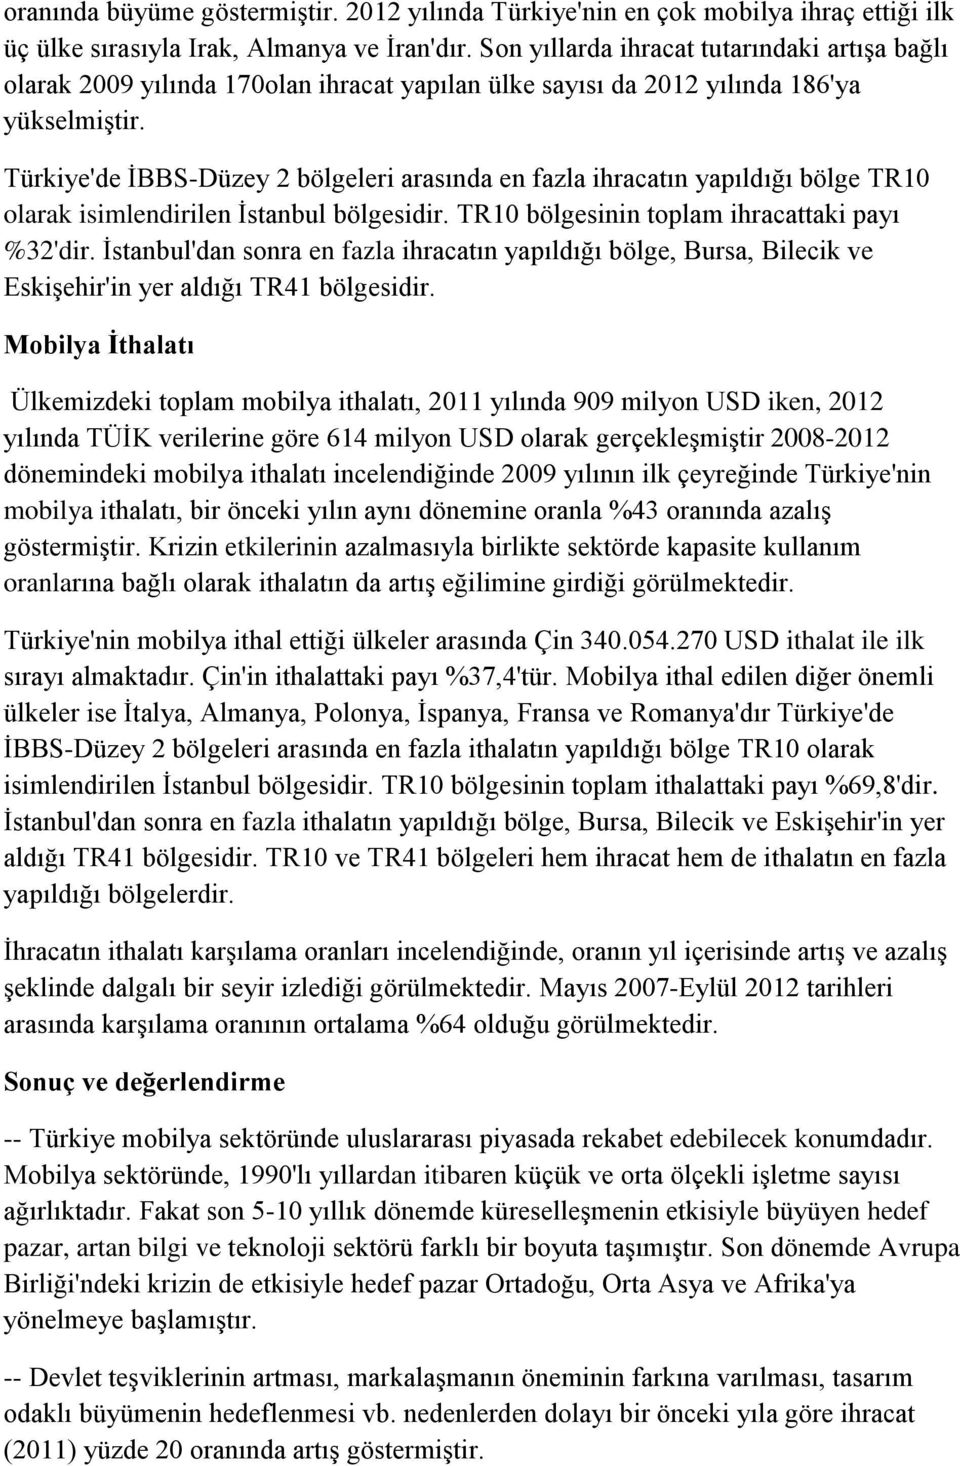 Türkiye'de İBBS-Düzey 2 bölgeleri arasında en fazla ihracatın yapıldığı bölge TR10 olarak isimlendirilen İstanbul bölgesidir. TR10 bölgesinin toplam ihracattaki payı %32'dir.